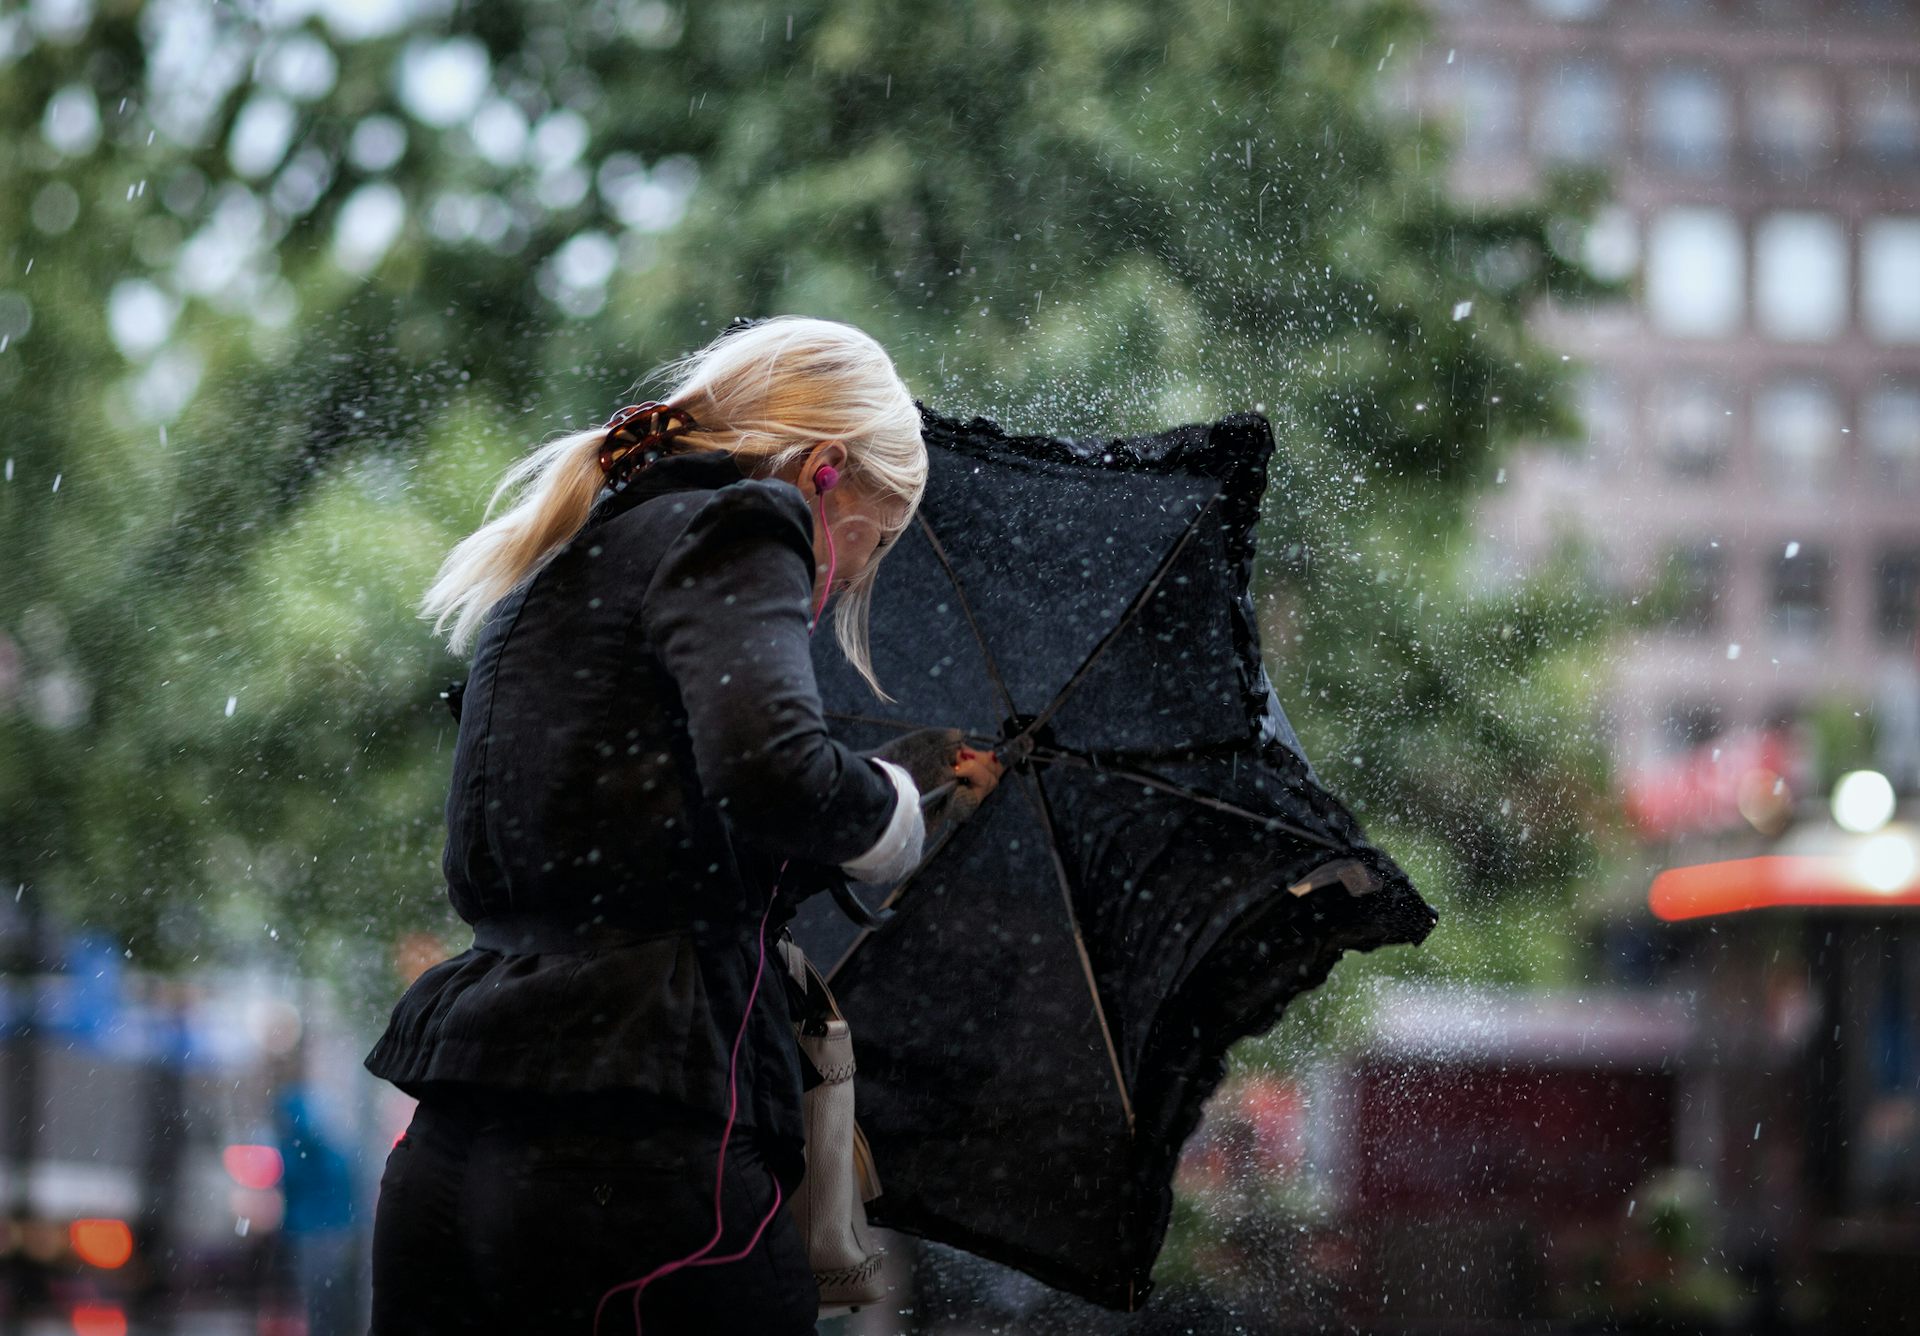 Сильный ветер в окна. Сильный ветер и дождь осень. Блондинка под зонтом в дождь. Зонт под дождем. Осень дождь девушка.